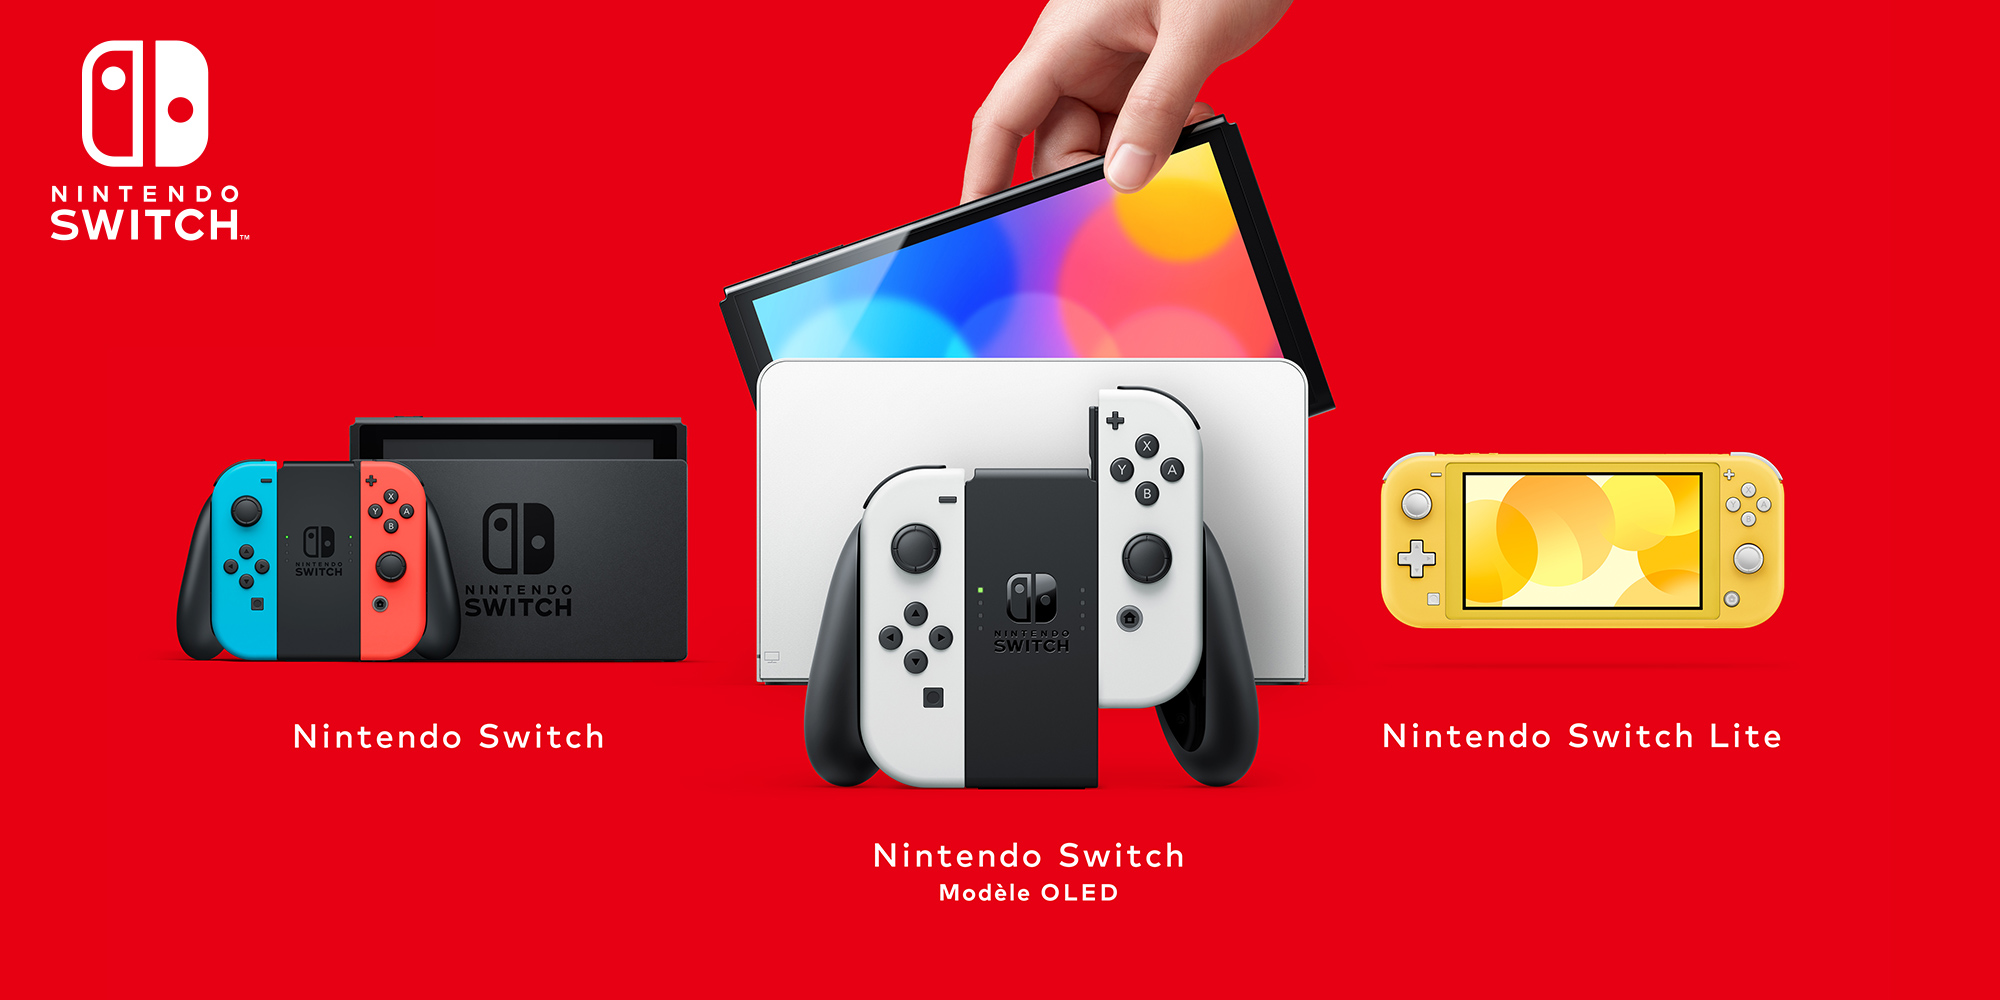 Vous venez de recevoir une Nintendo Switch ? Découvrez ces infos et fonctionnalités utiles !